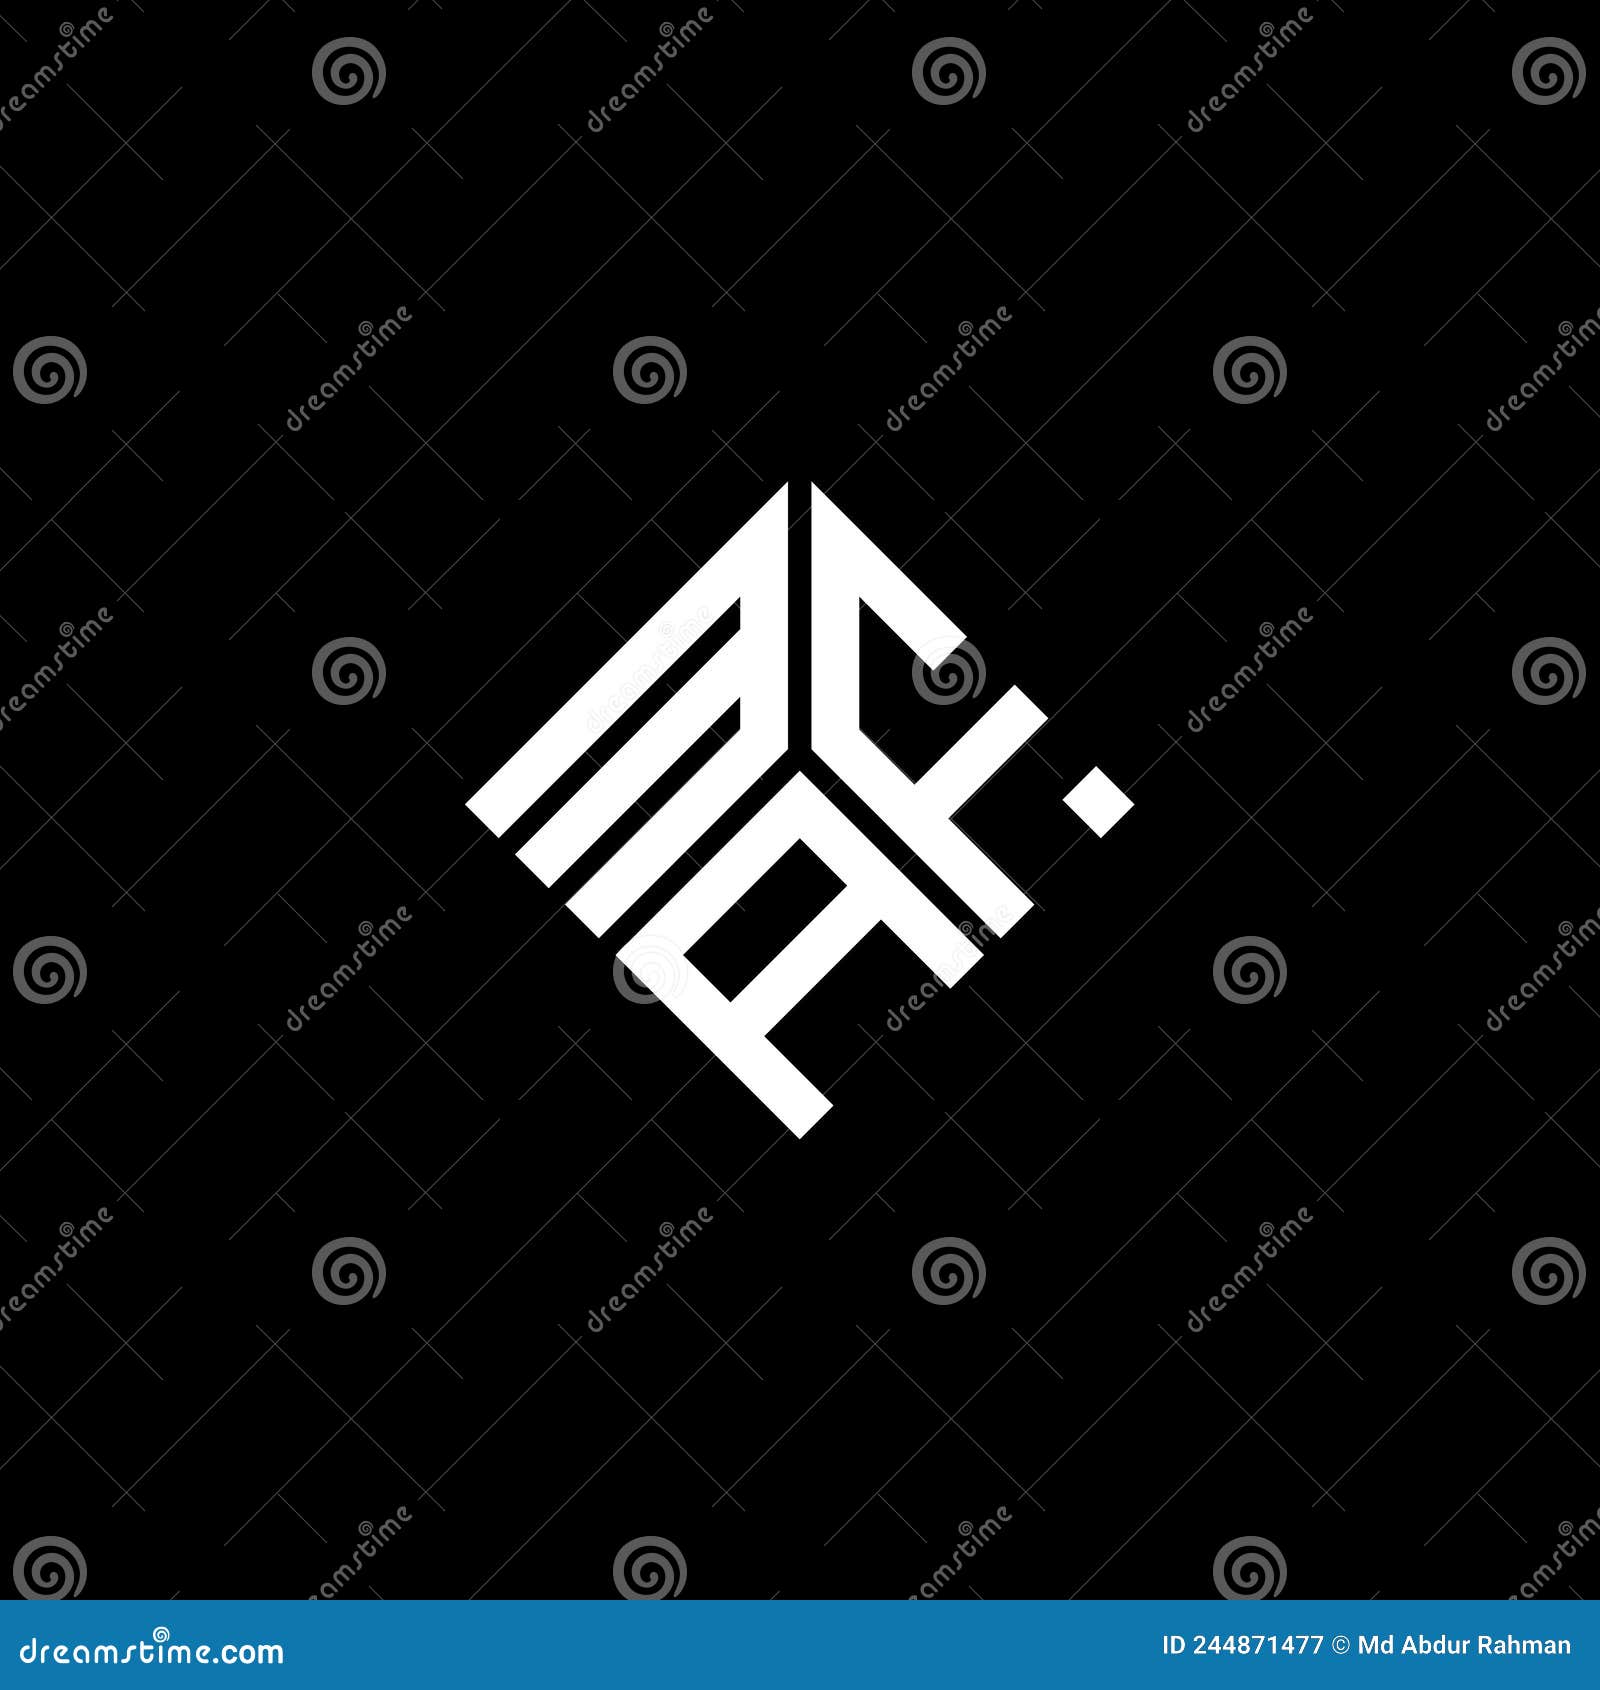 maf letter logo  on black background. maf creative initials letter logo concept. maf letter 